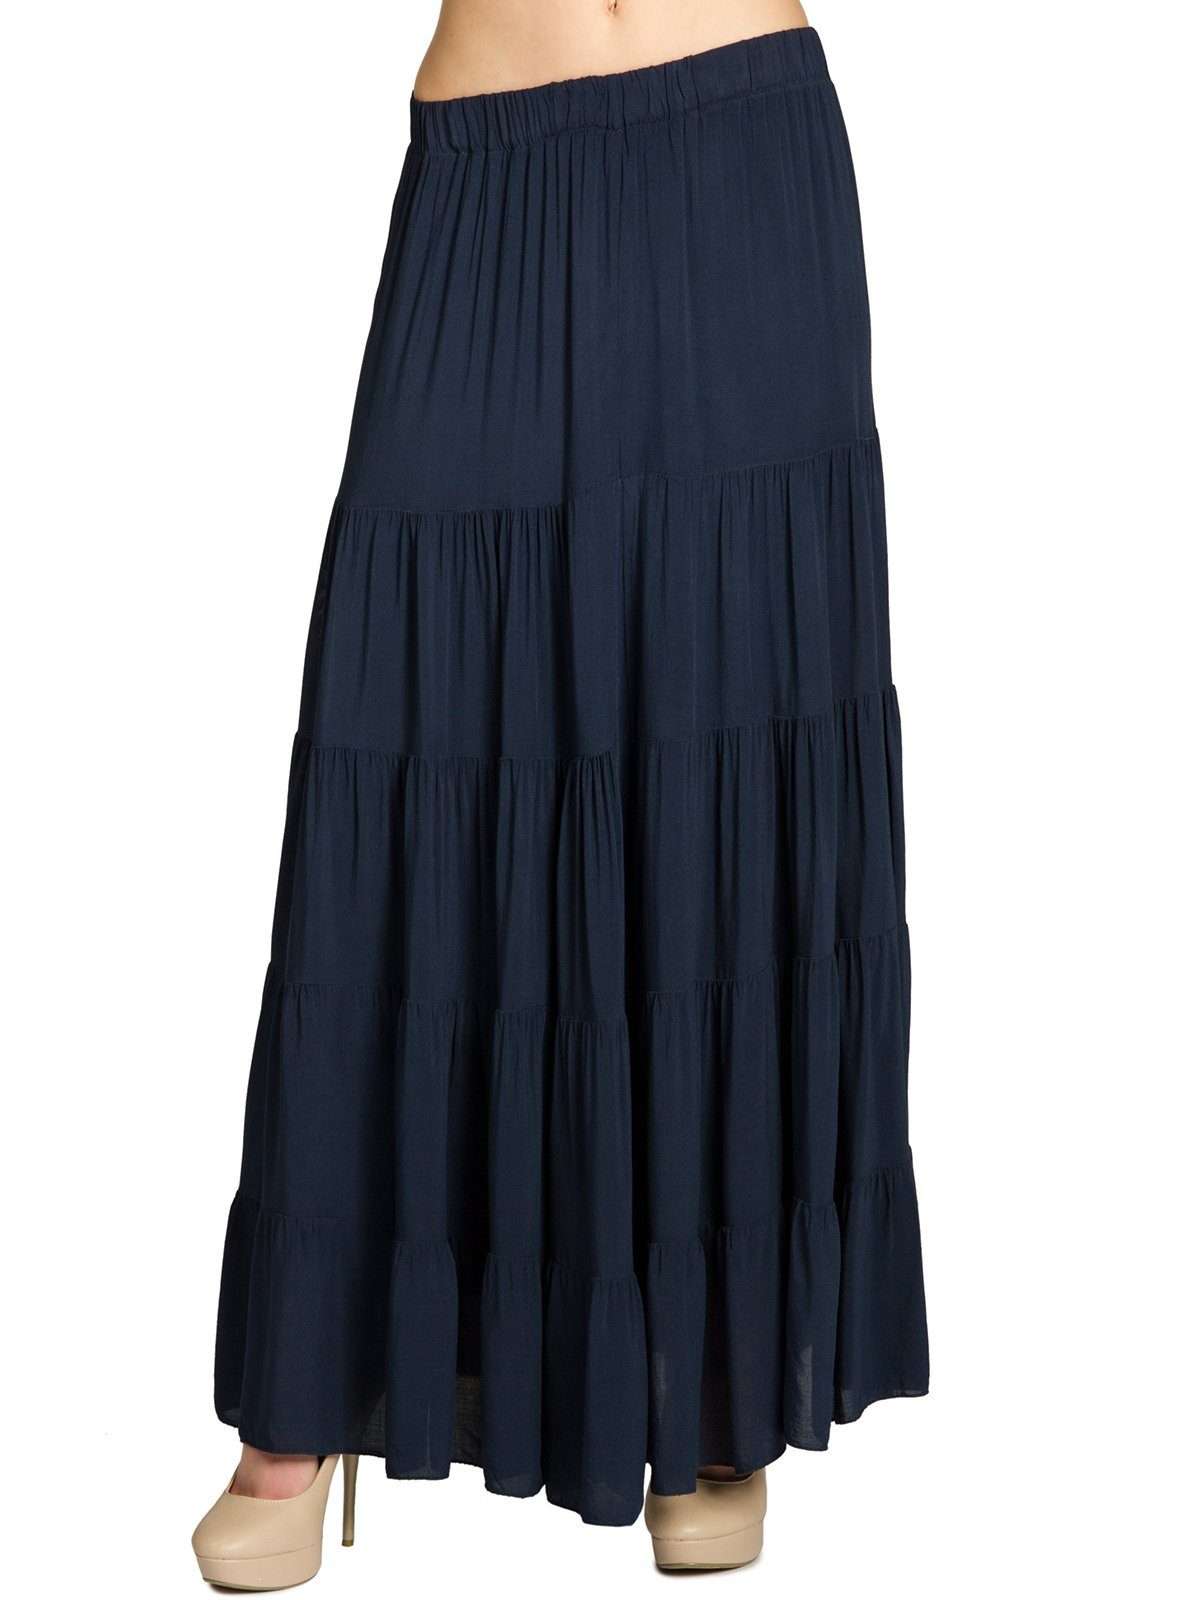 Плиссированная юбка RO020 длинная элегантная женская летняя юбка макси